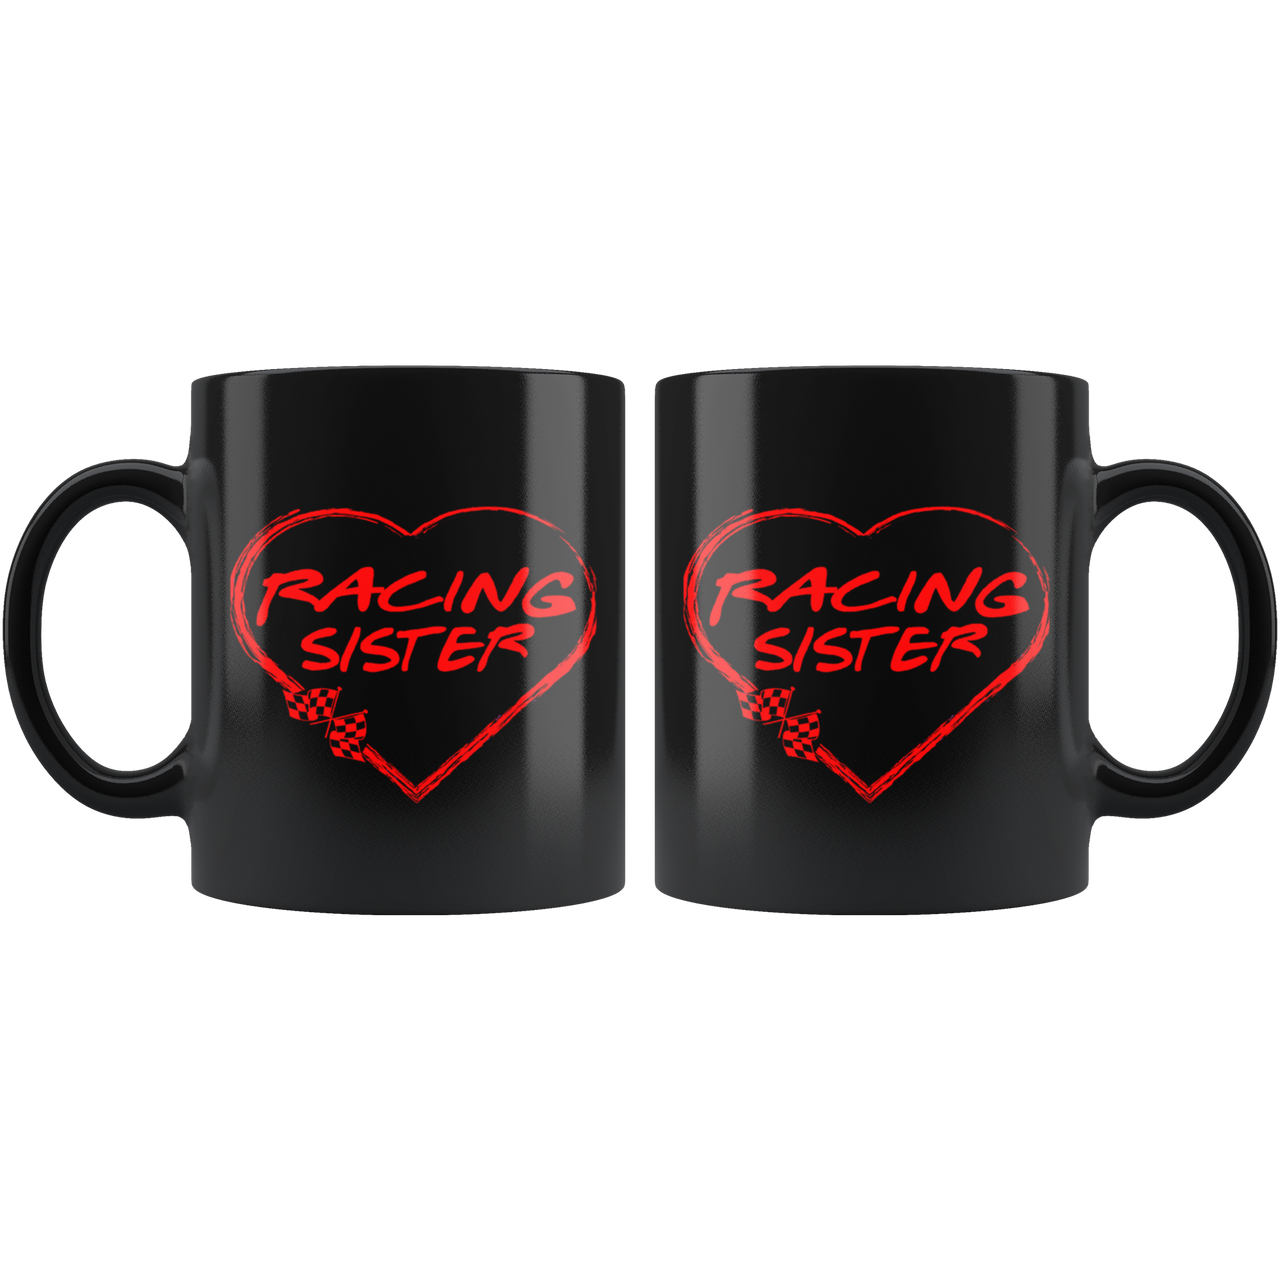 Racing Sister Heart Mug!